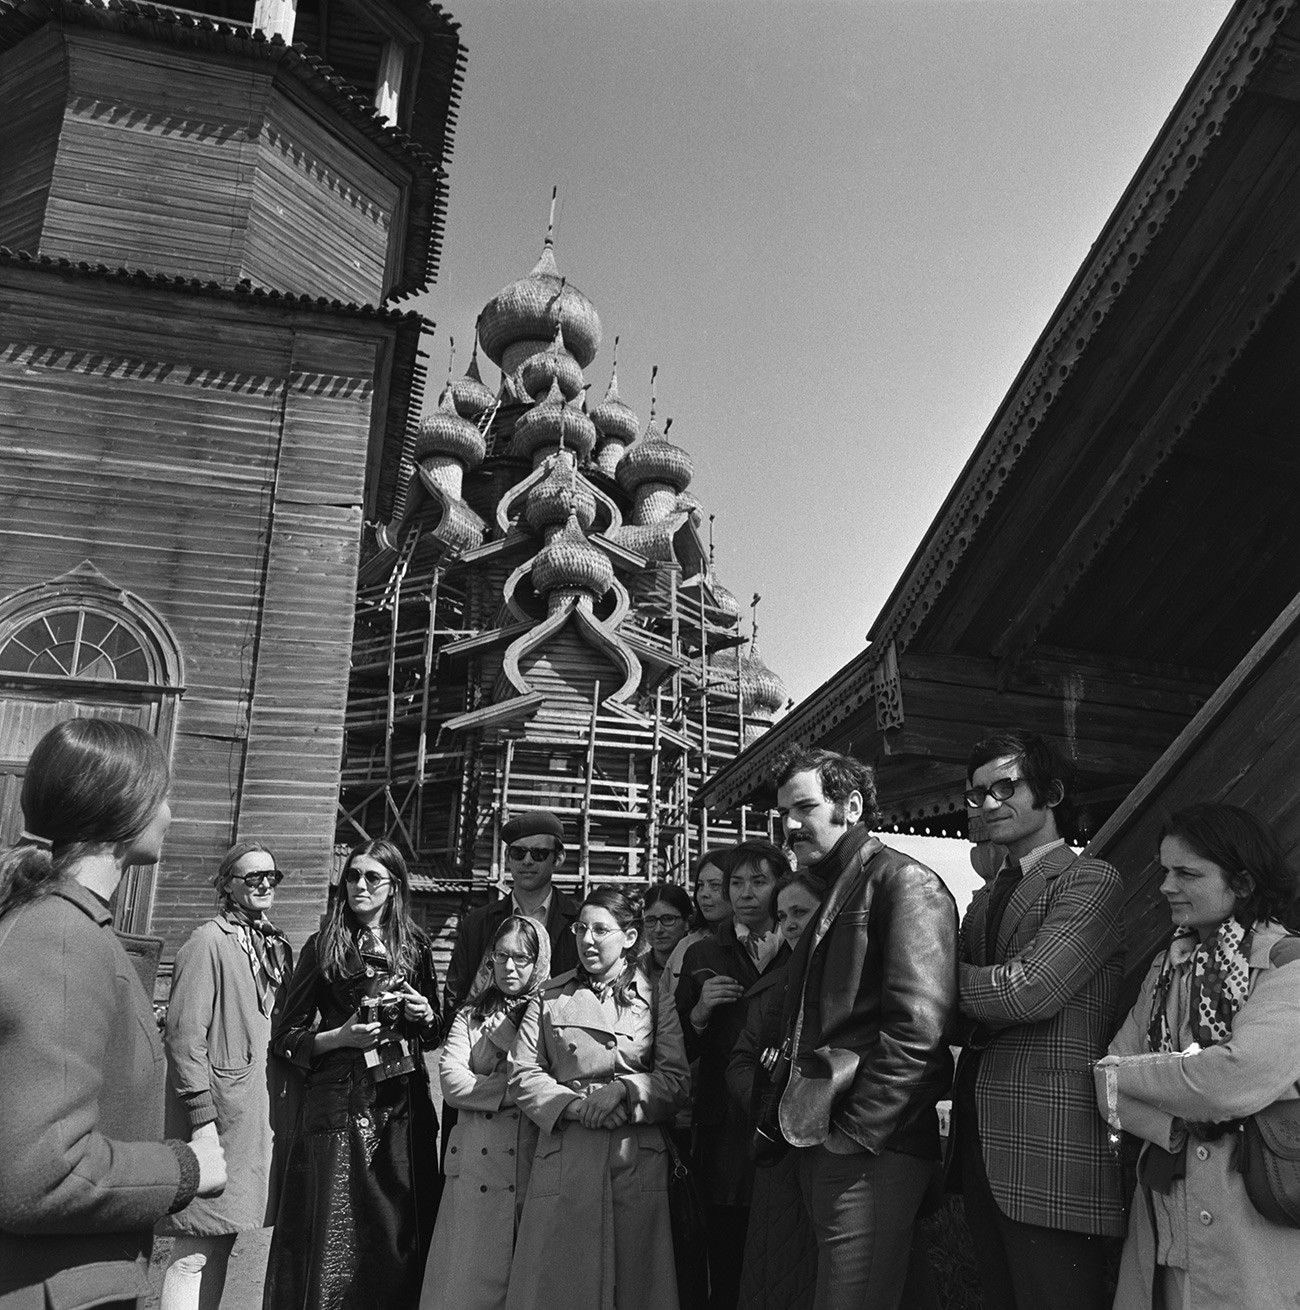 Touristes étrangers visitant le musée de l'architecture en bois de l'île de Kiji. 1972